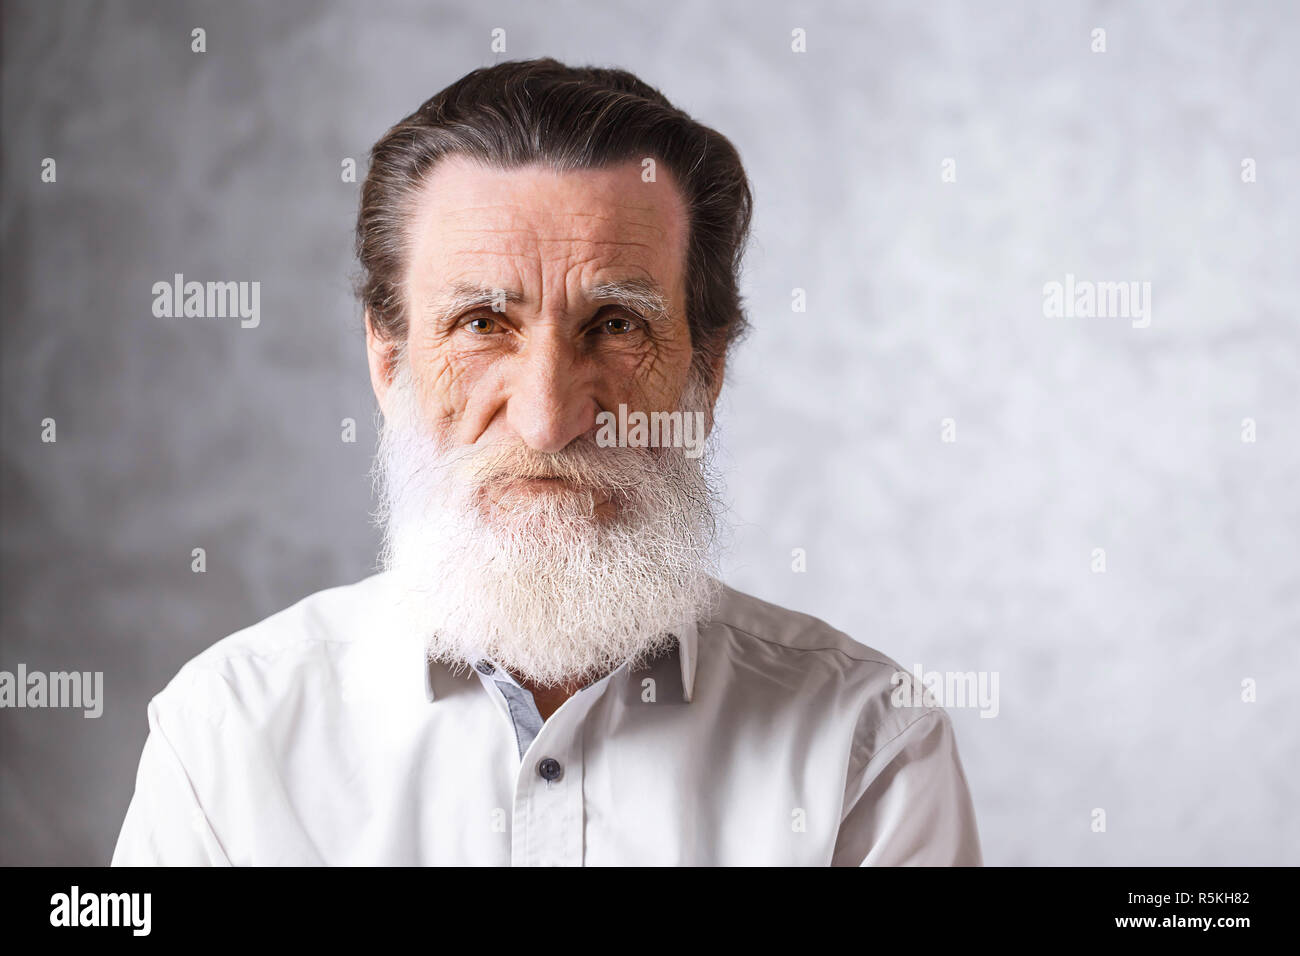 Porträt des zeitgenössischen älterer bärtiger Mann mit Falten im weißen Hemd auf dem grauen Hintergrund, moderne Technik, Kommunikation Konzept Stockfoto